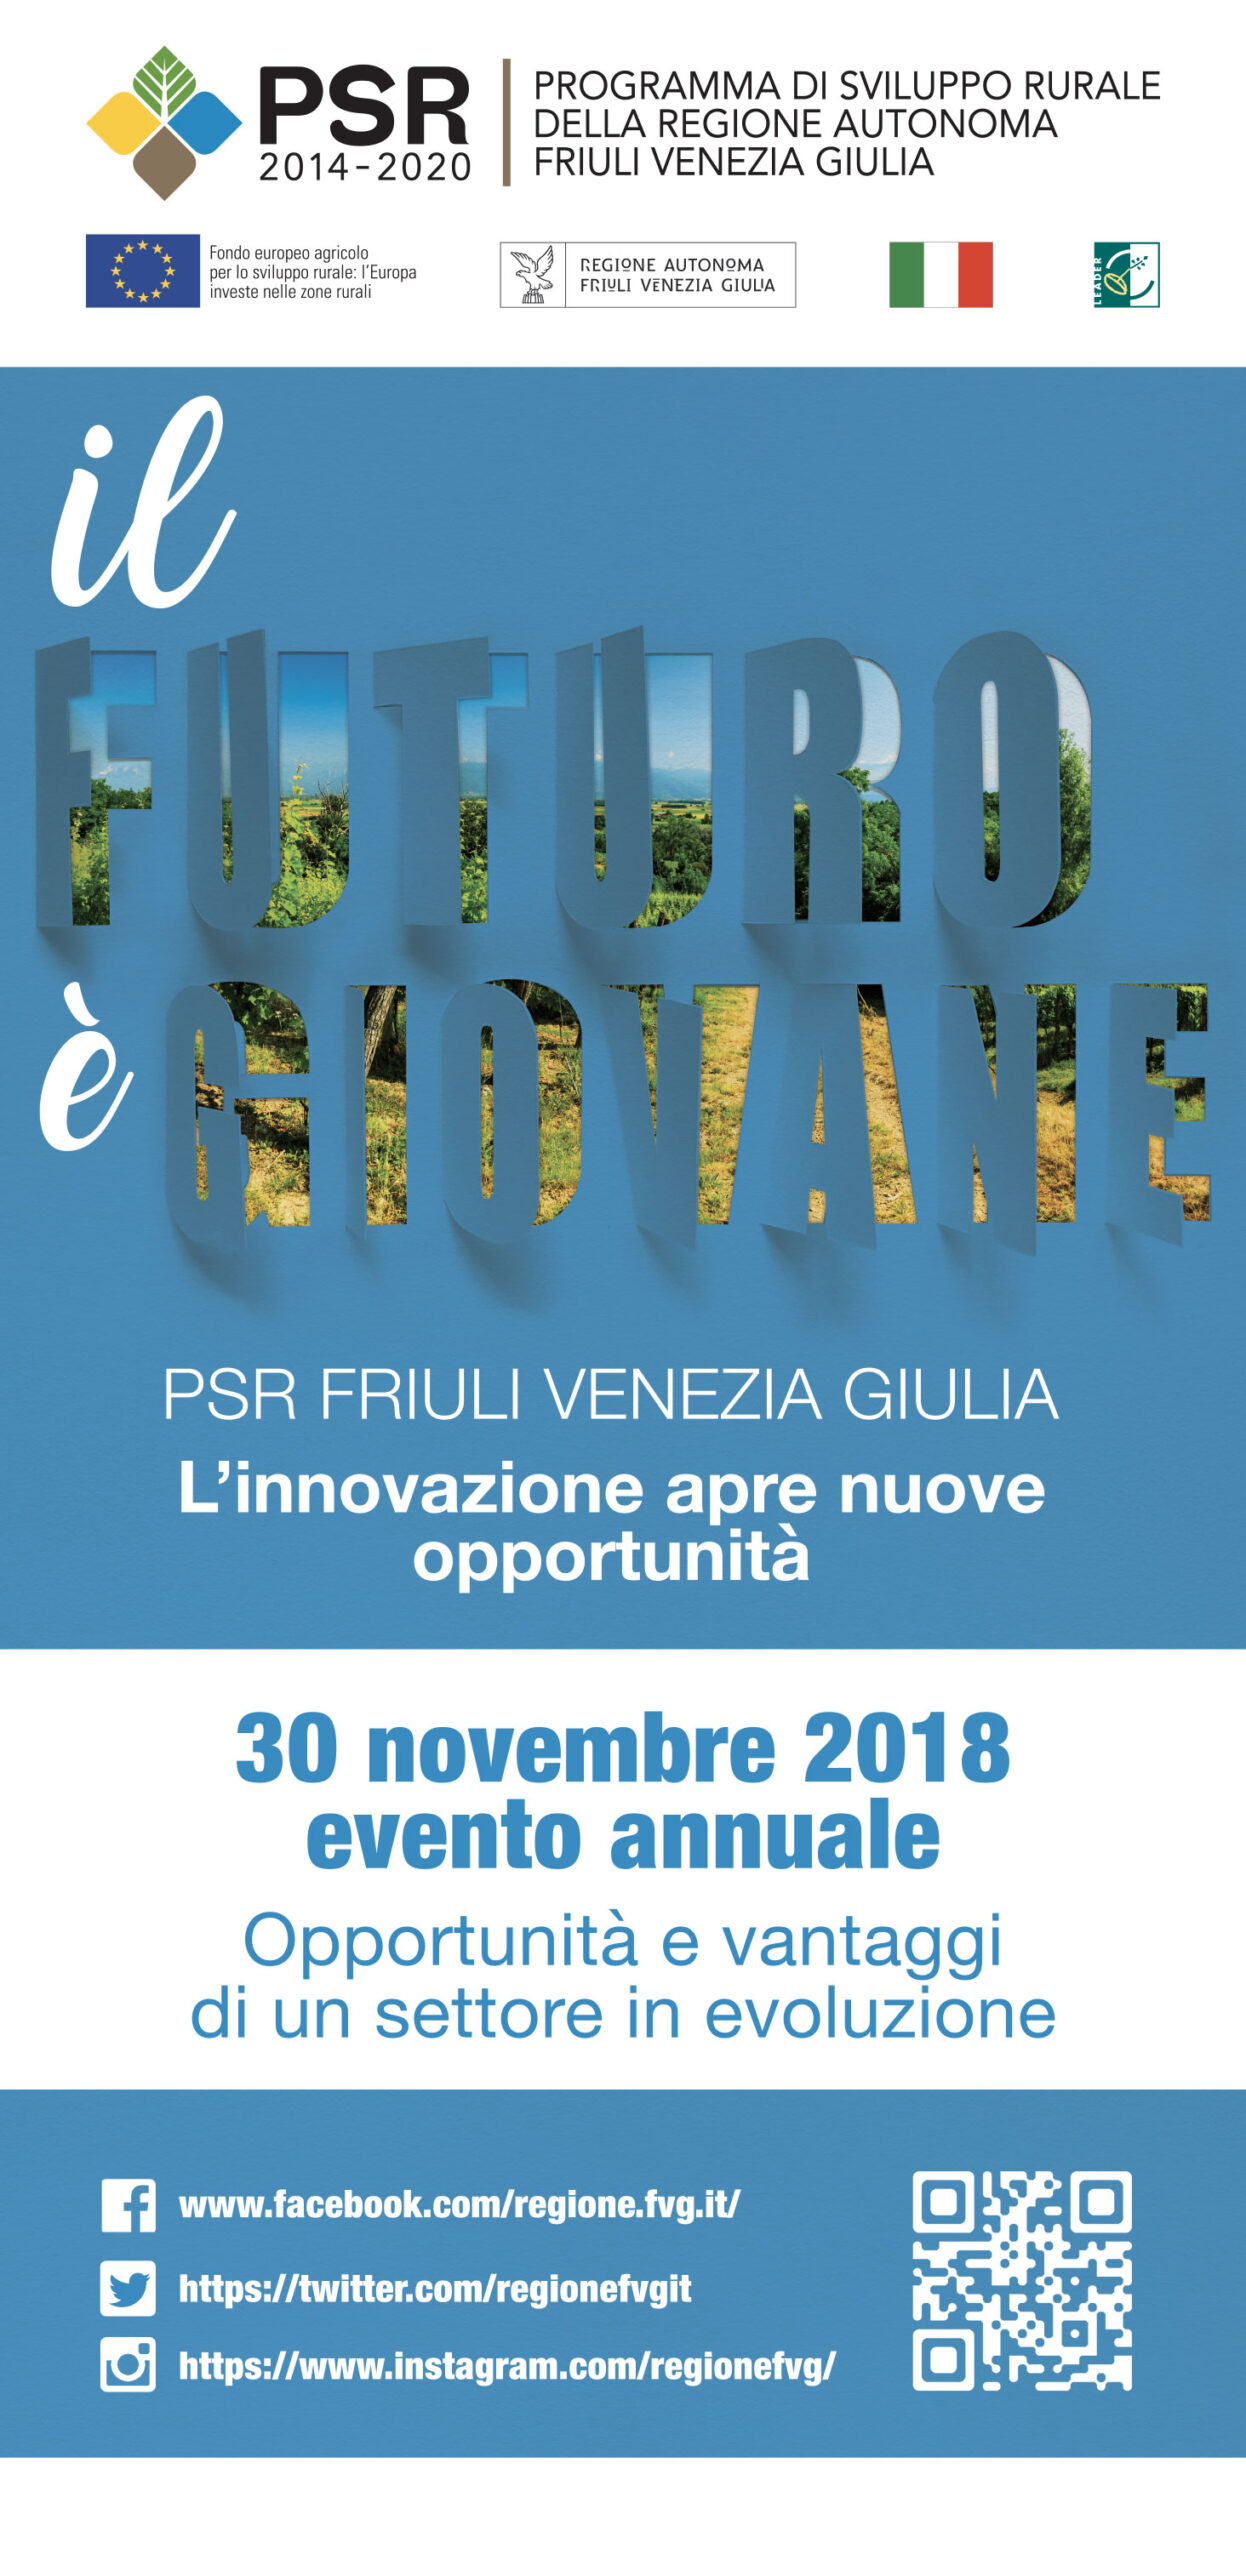 PSR - Programma sviluppo rurale della Regione Autonoma Friuli Venezia Giulia